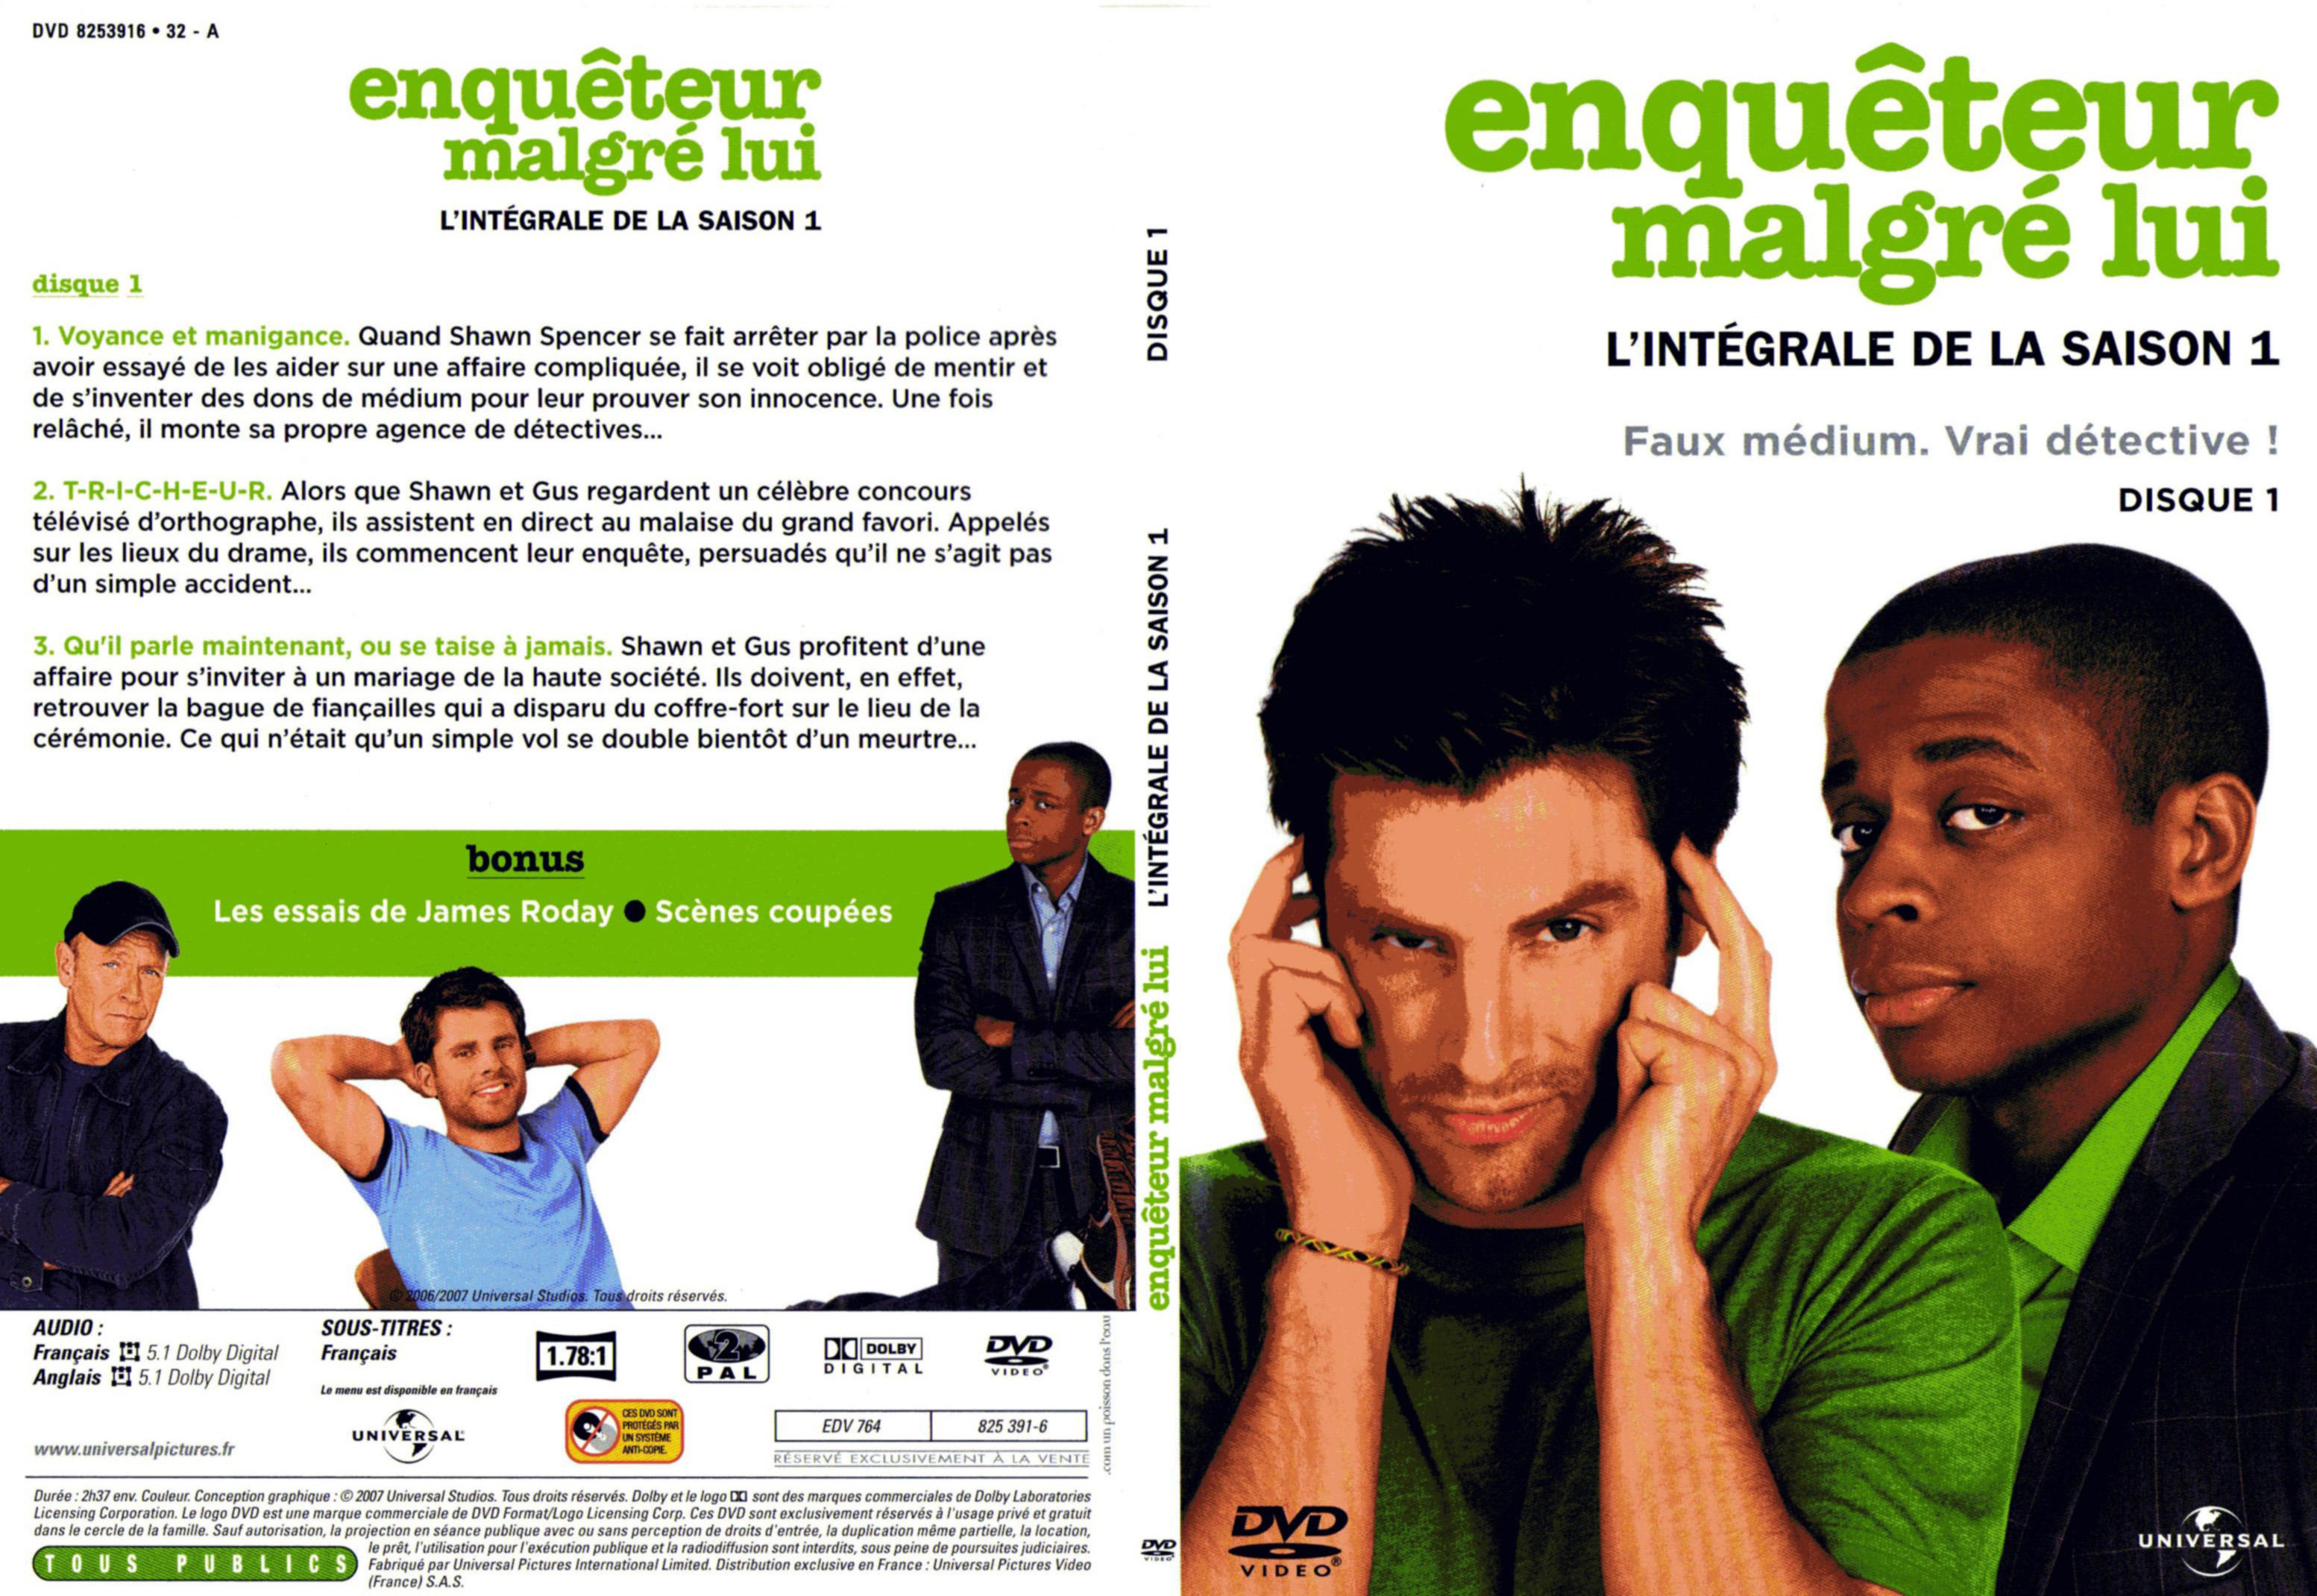 Jaquette DVD Enqueteur malgr lui Saison 1 DVD 1